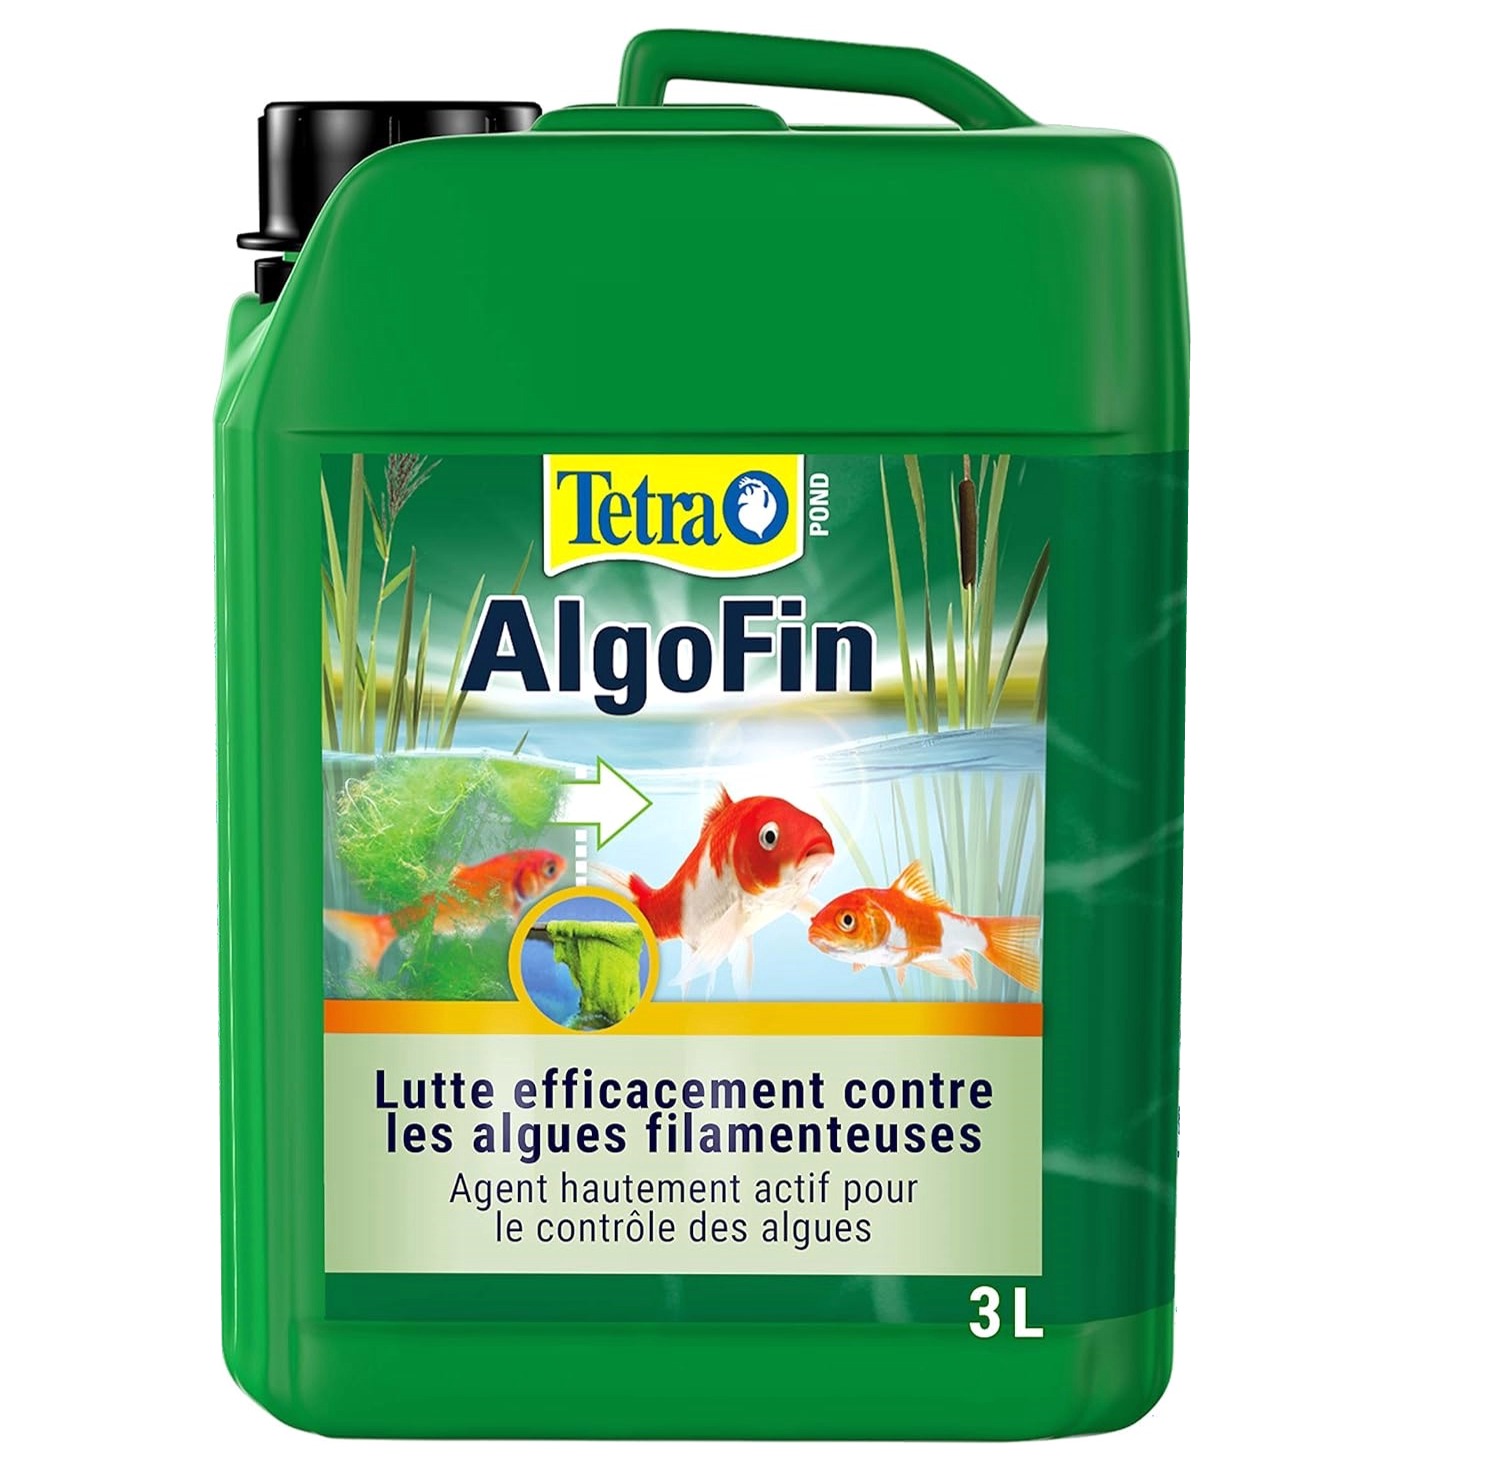 TETRA Pond AlgoFin 3L detruit les algues filamenteuses et autres algues courantes en bassin. Traite jusqu\'à 60000l